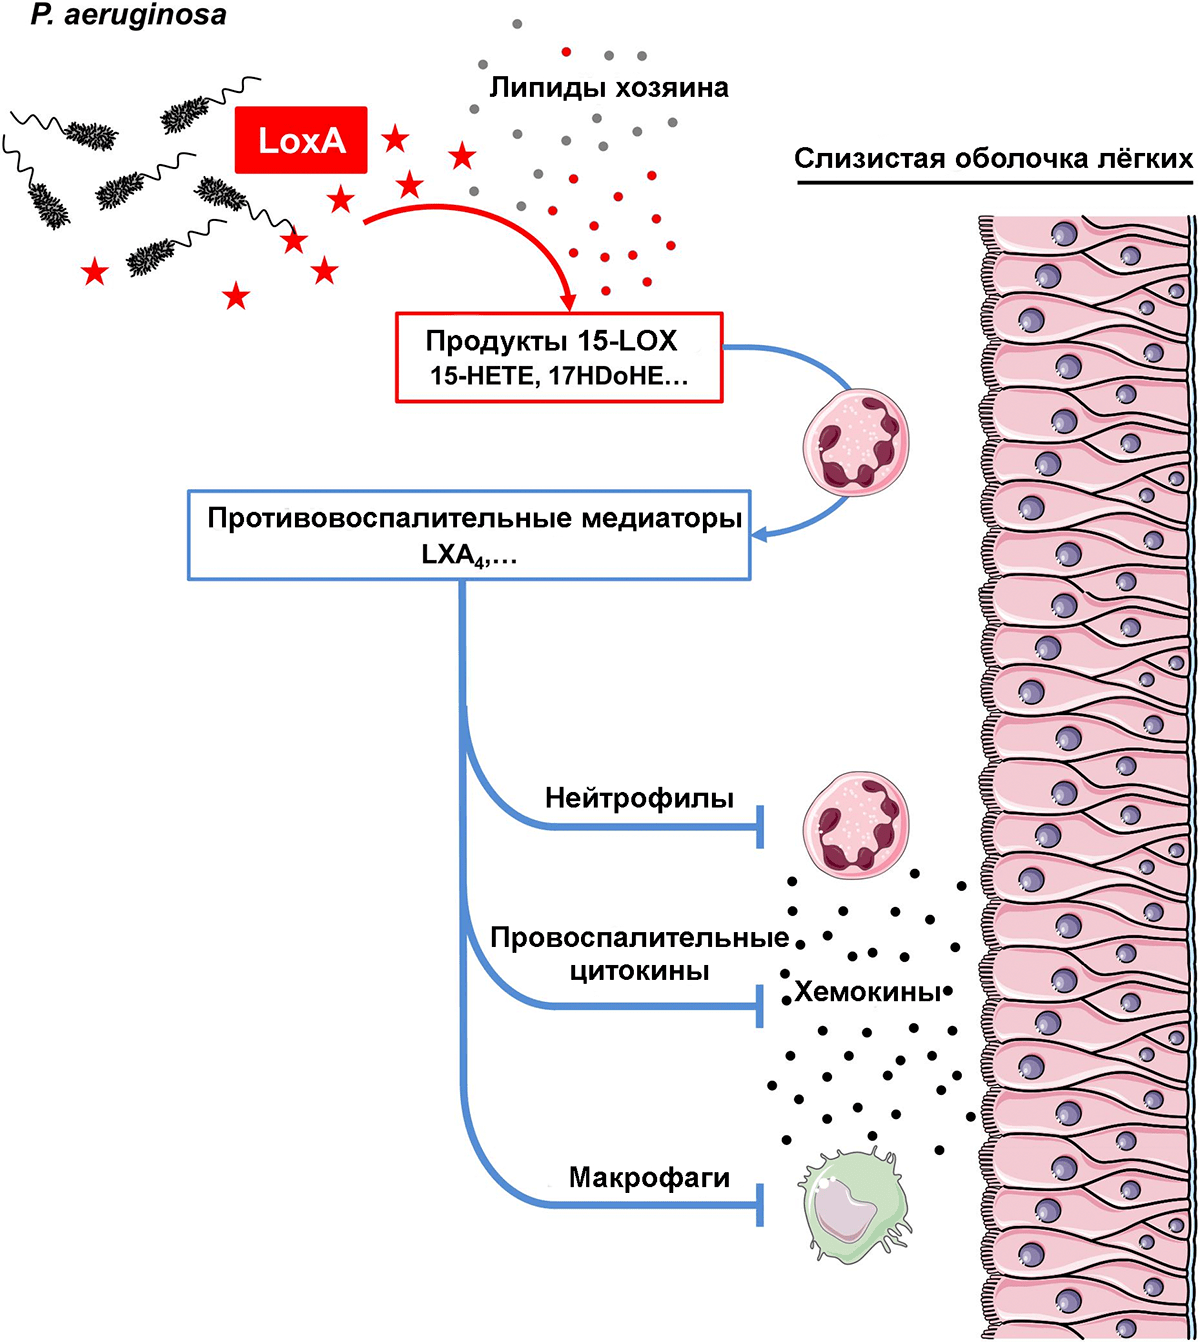 Механизм действия липоксигеназы P. aeruginosa